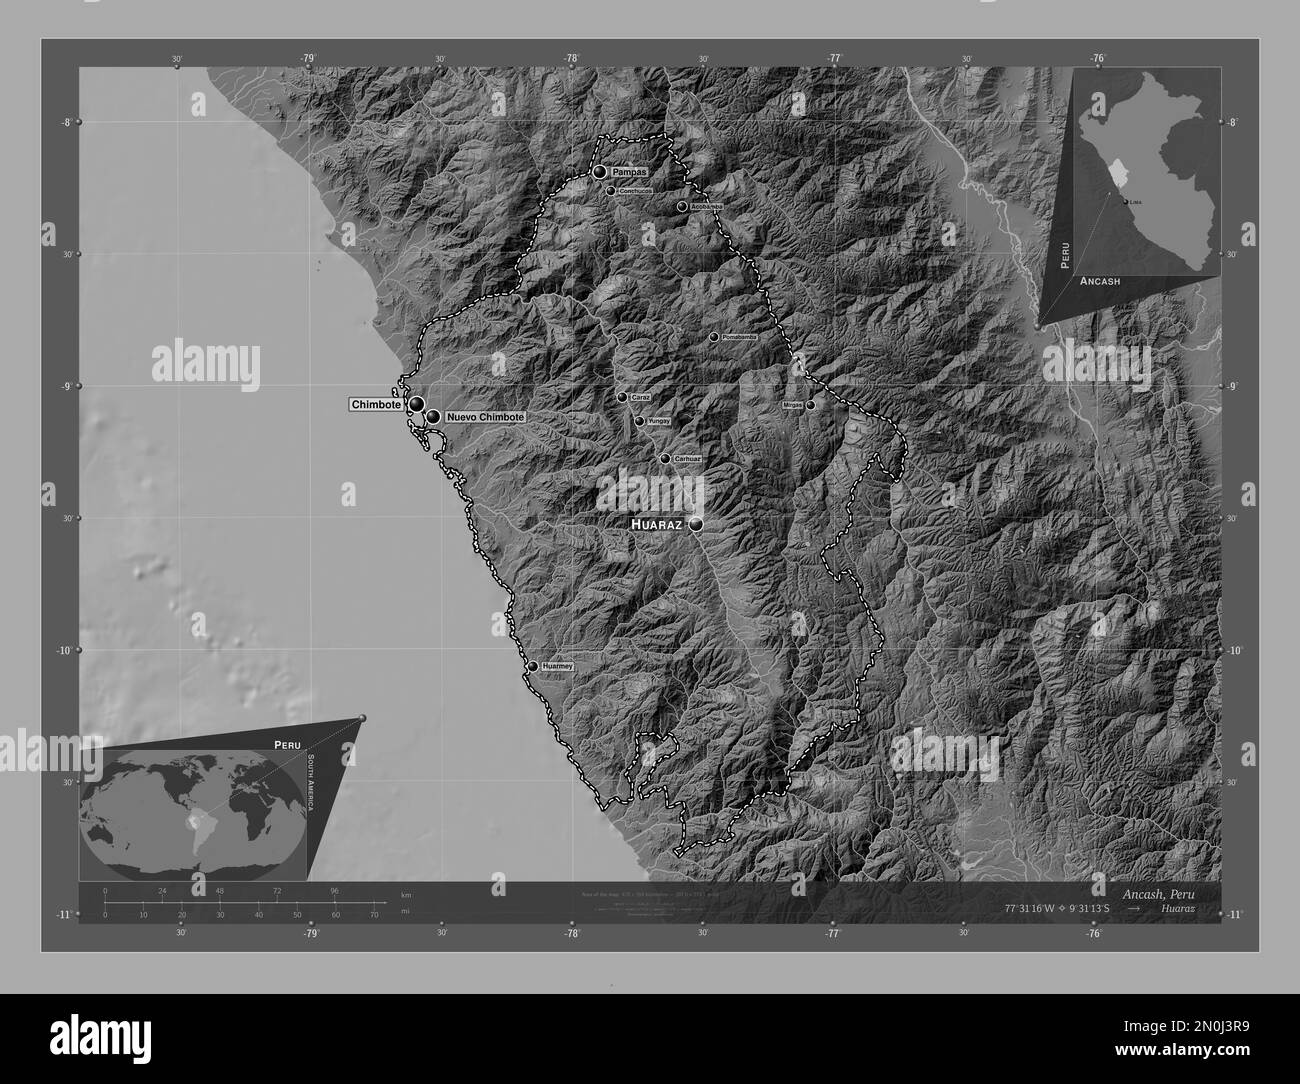 Ancash, Region Peru. Bilevel-Höhenkarte mit Seen und Flüssen. Standorte und Namen der wichtigsten Städte der Region. Eckkarten für zusätzliche Standorte Stockfoto